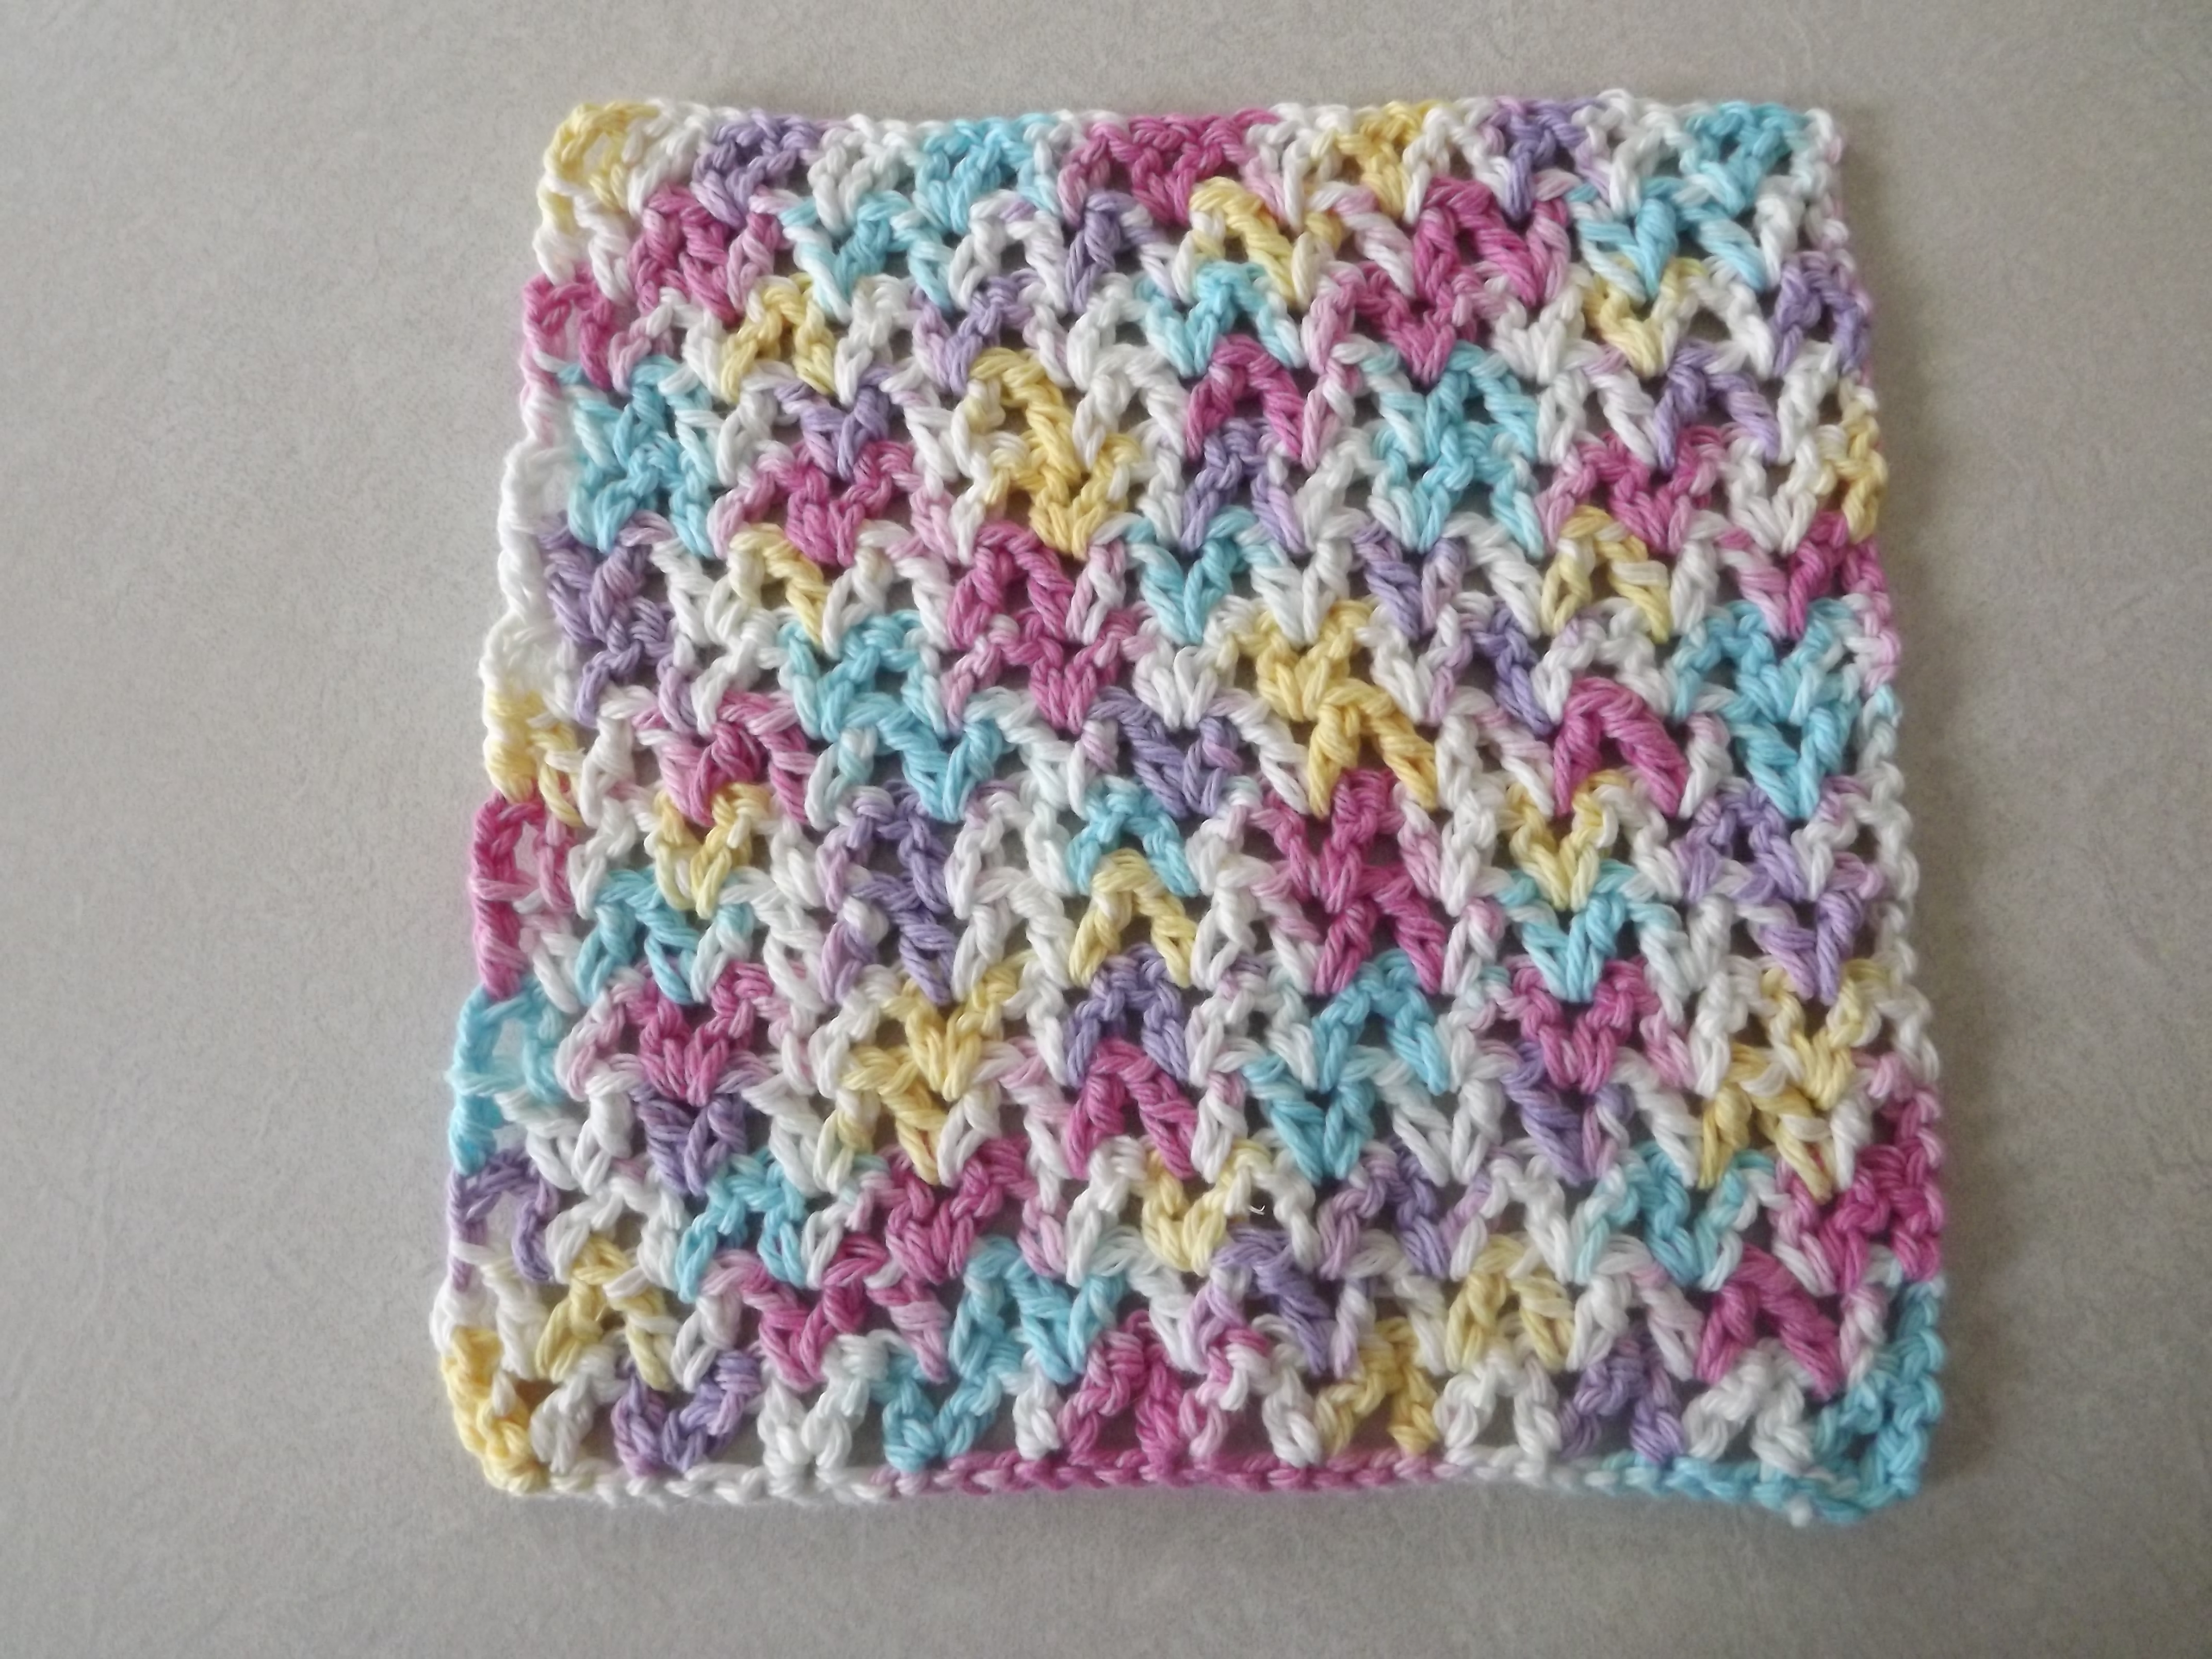 Crochet Dishcloth Free Pattern Free V Stitch Dishcloth Pattern